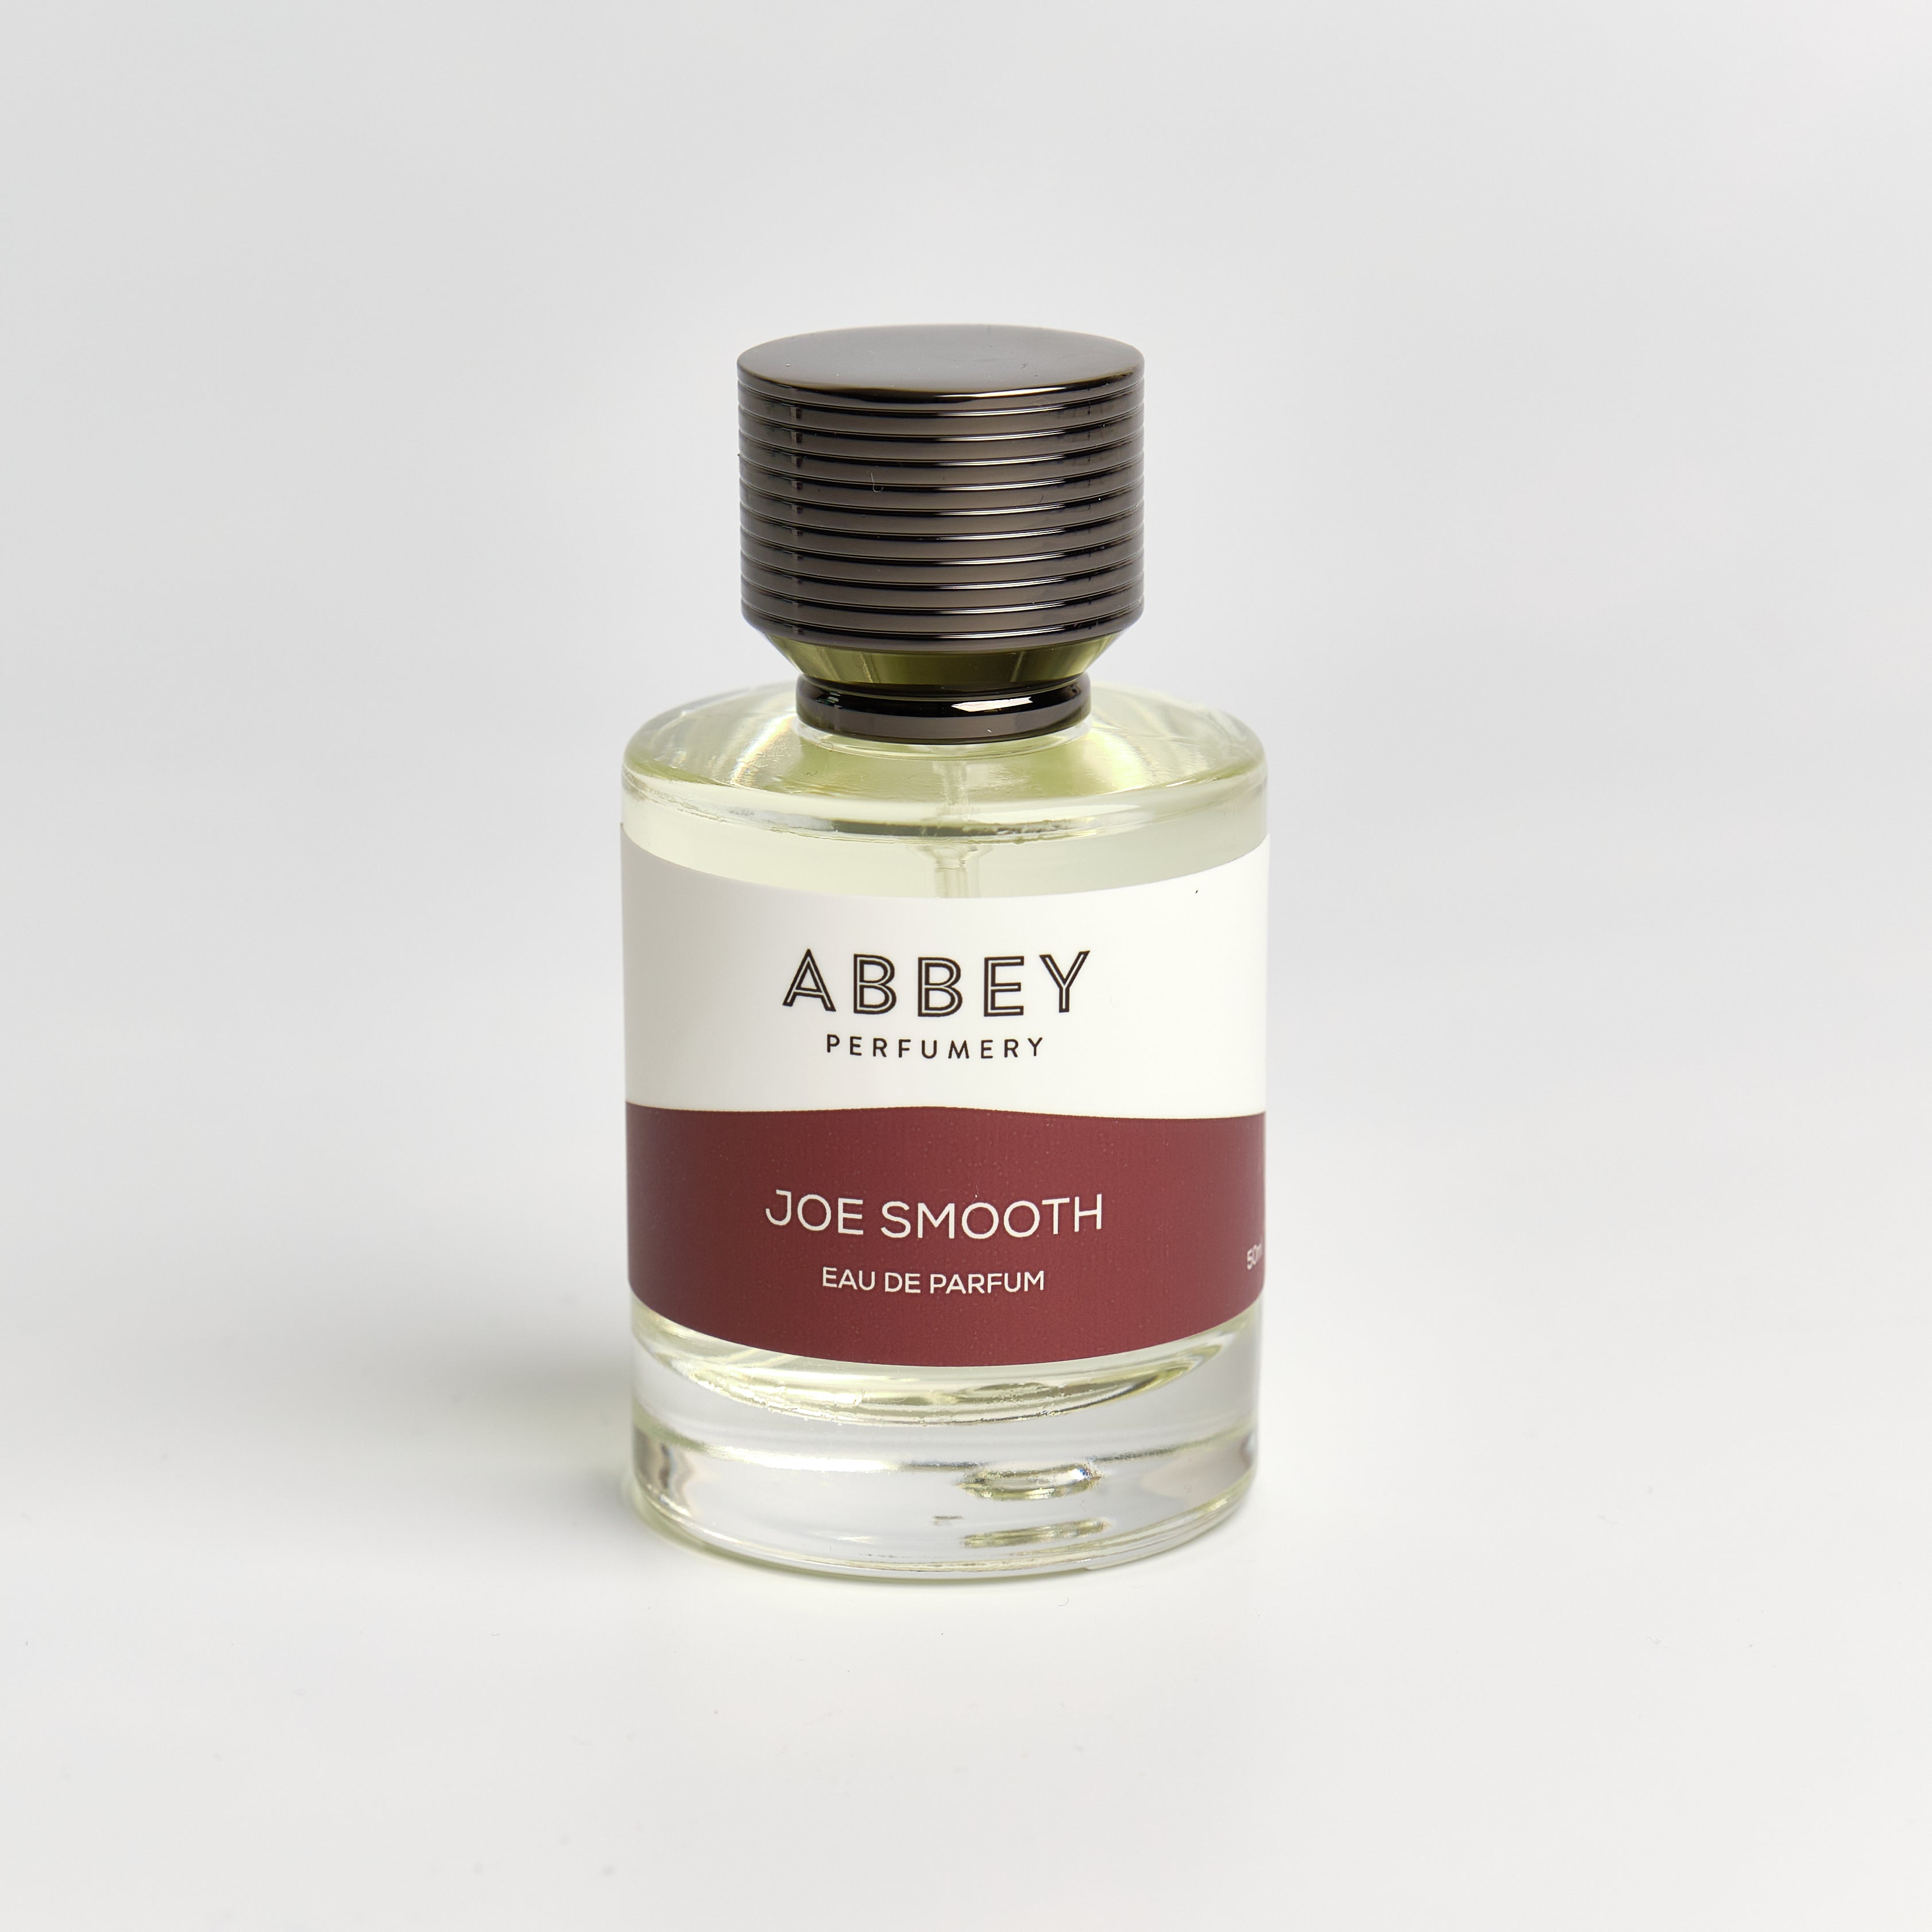 Joe Smooth perfume bottle 50ml on white background